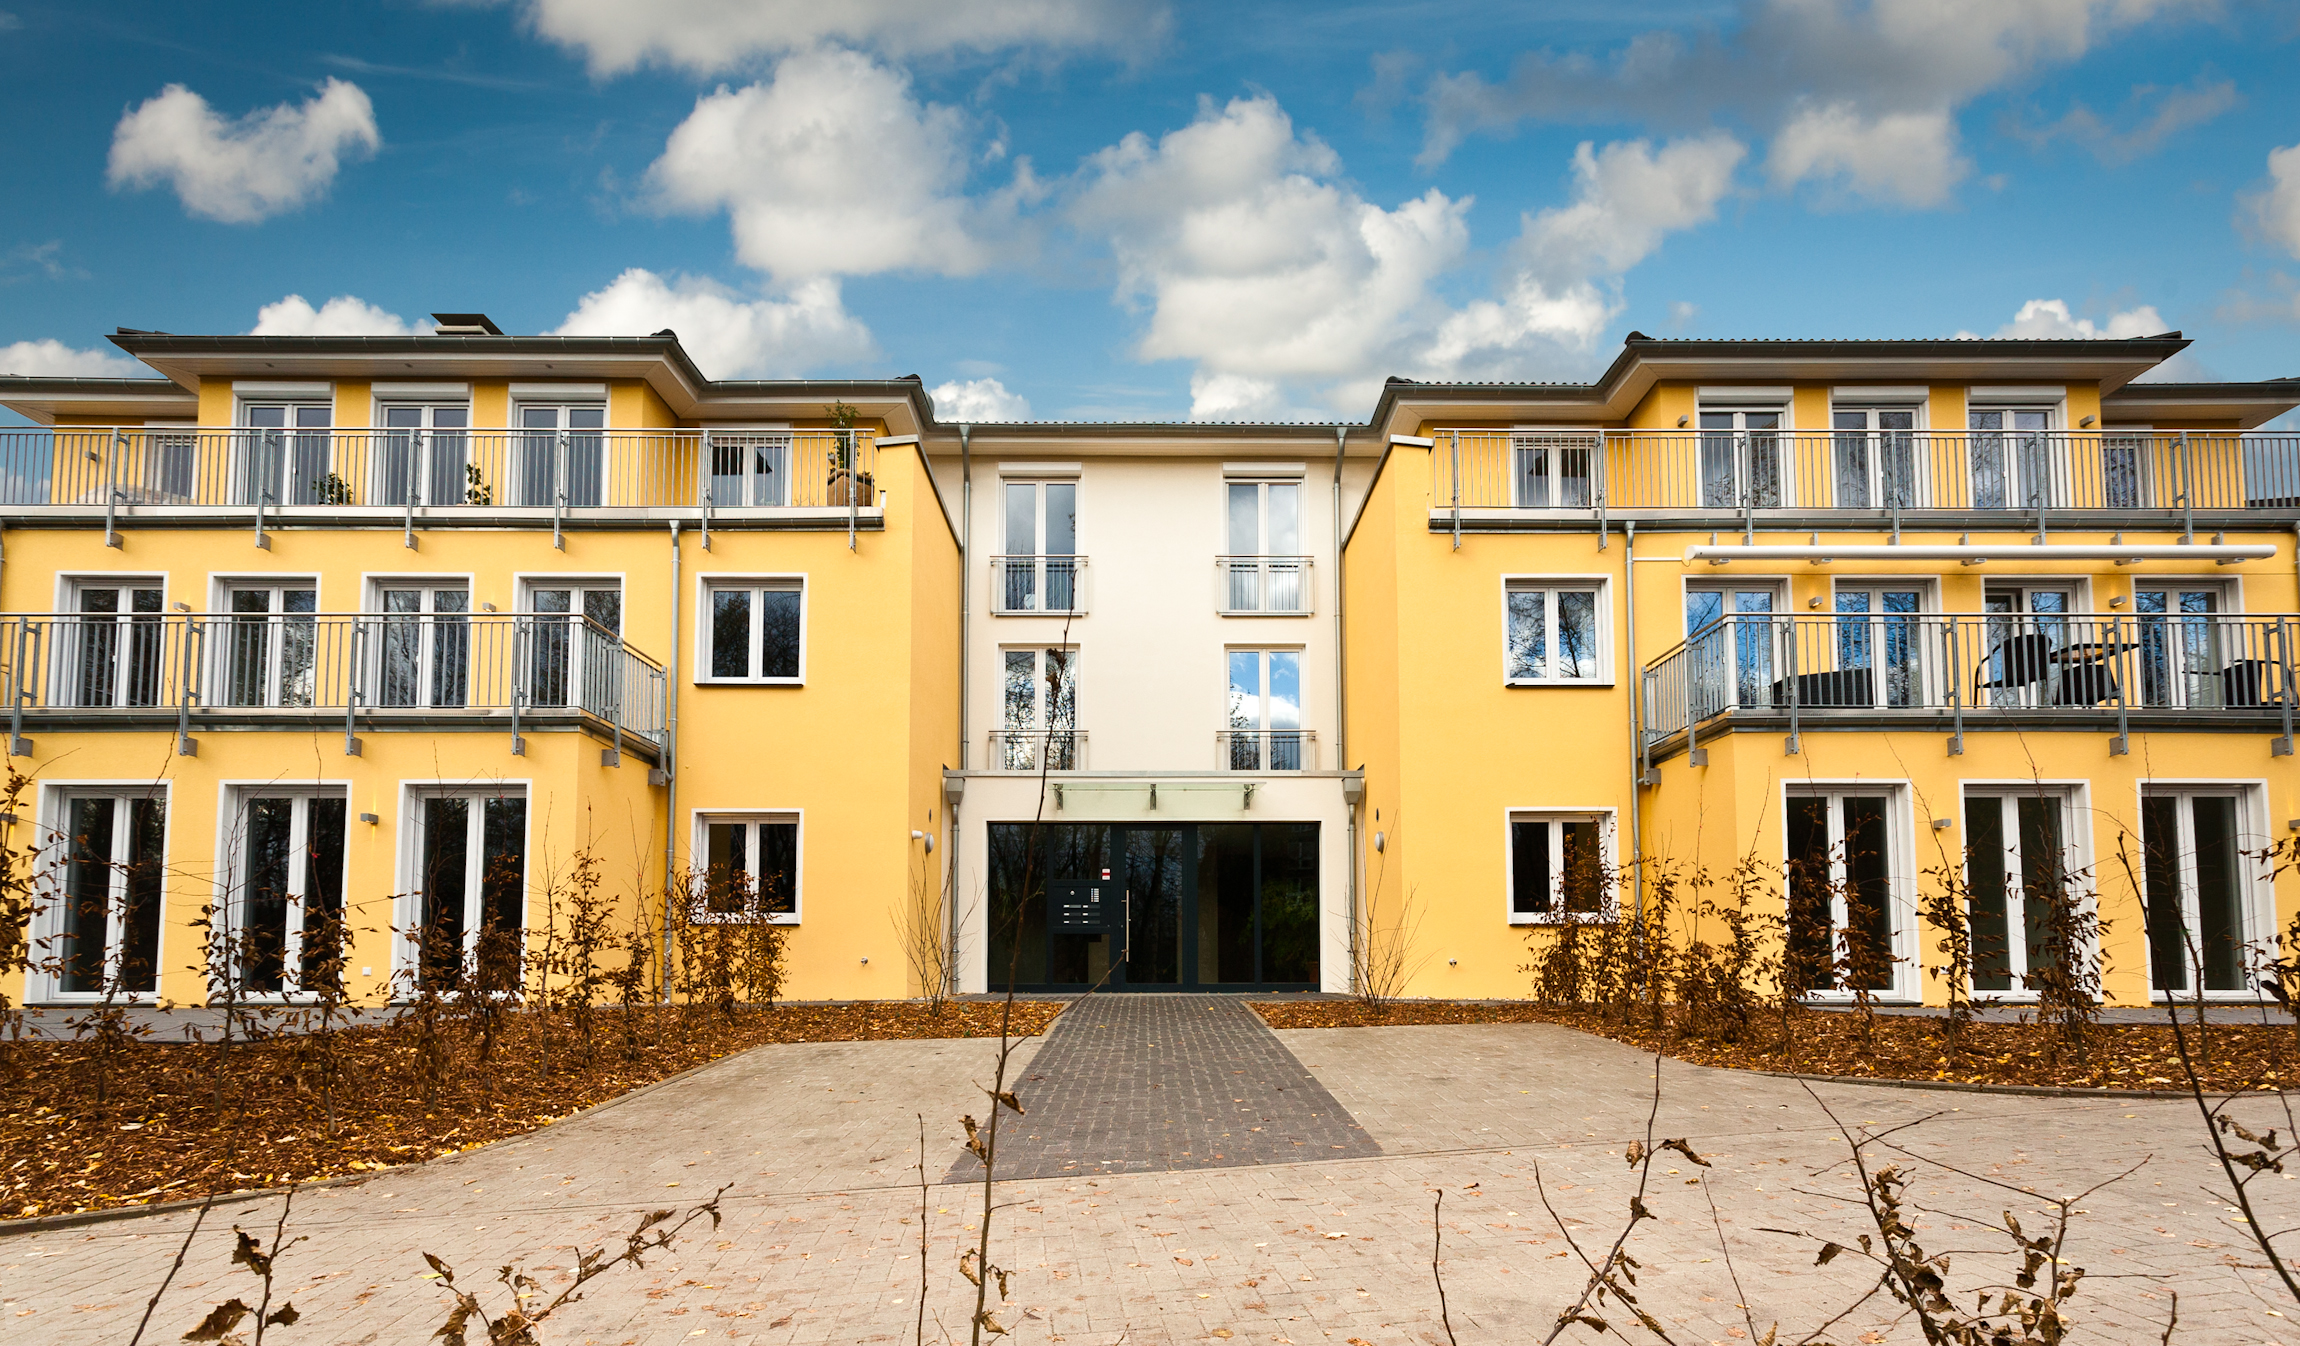 Projektentwicklung, Planung, Realisierung Wohnhaus in Hattingen